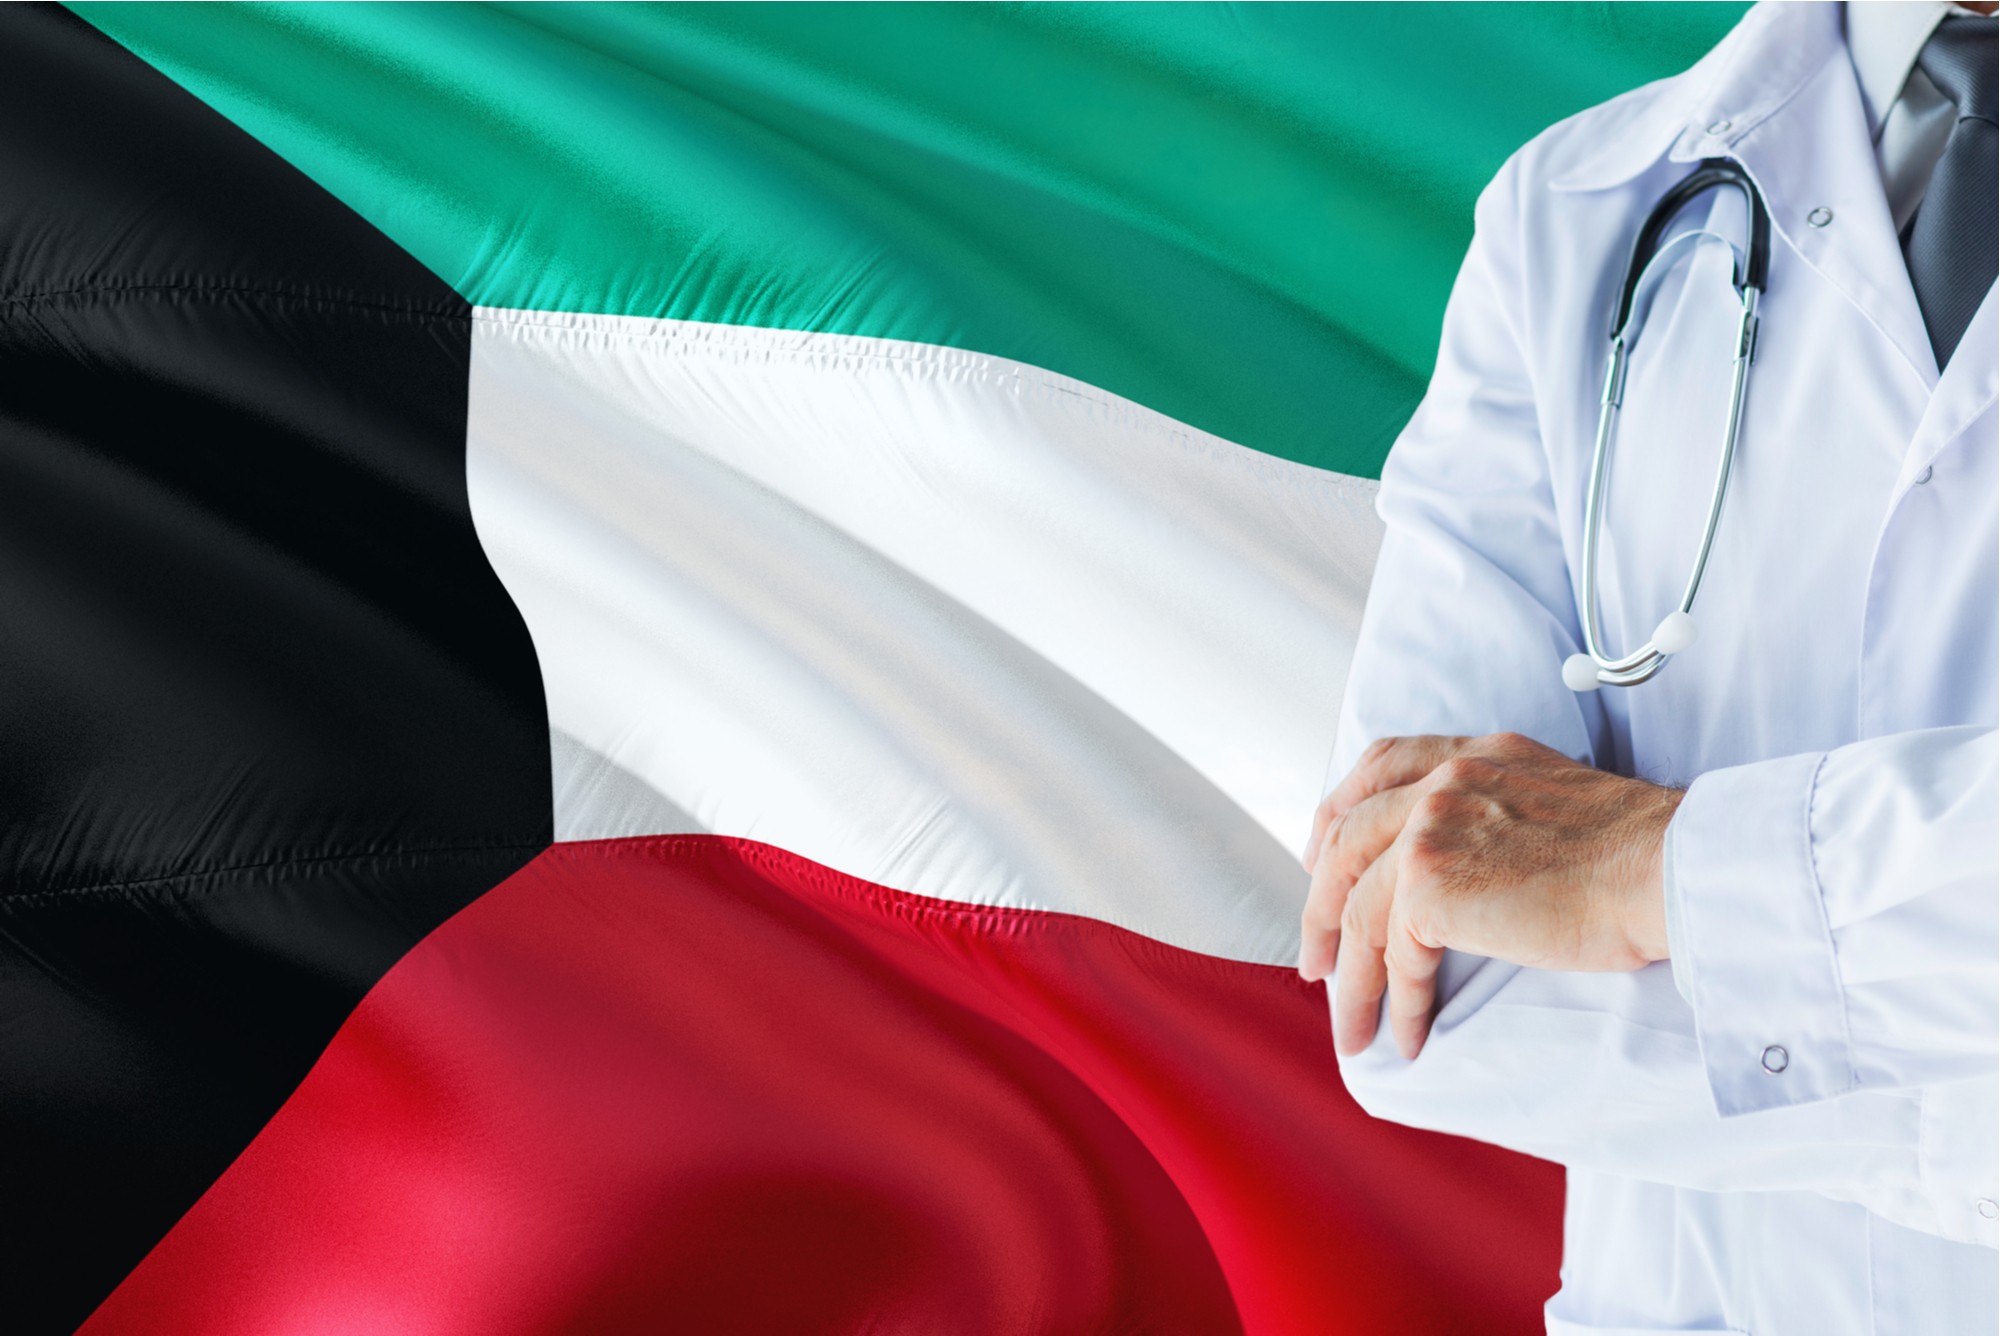 الكويت تعلن حظر شامل في البلاد بداية من الأحد حتى 30 مايو